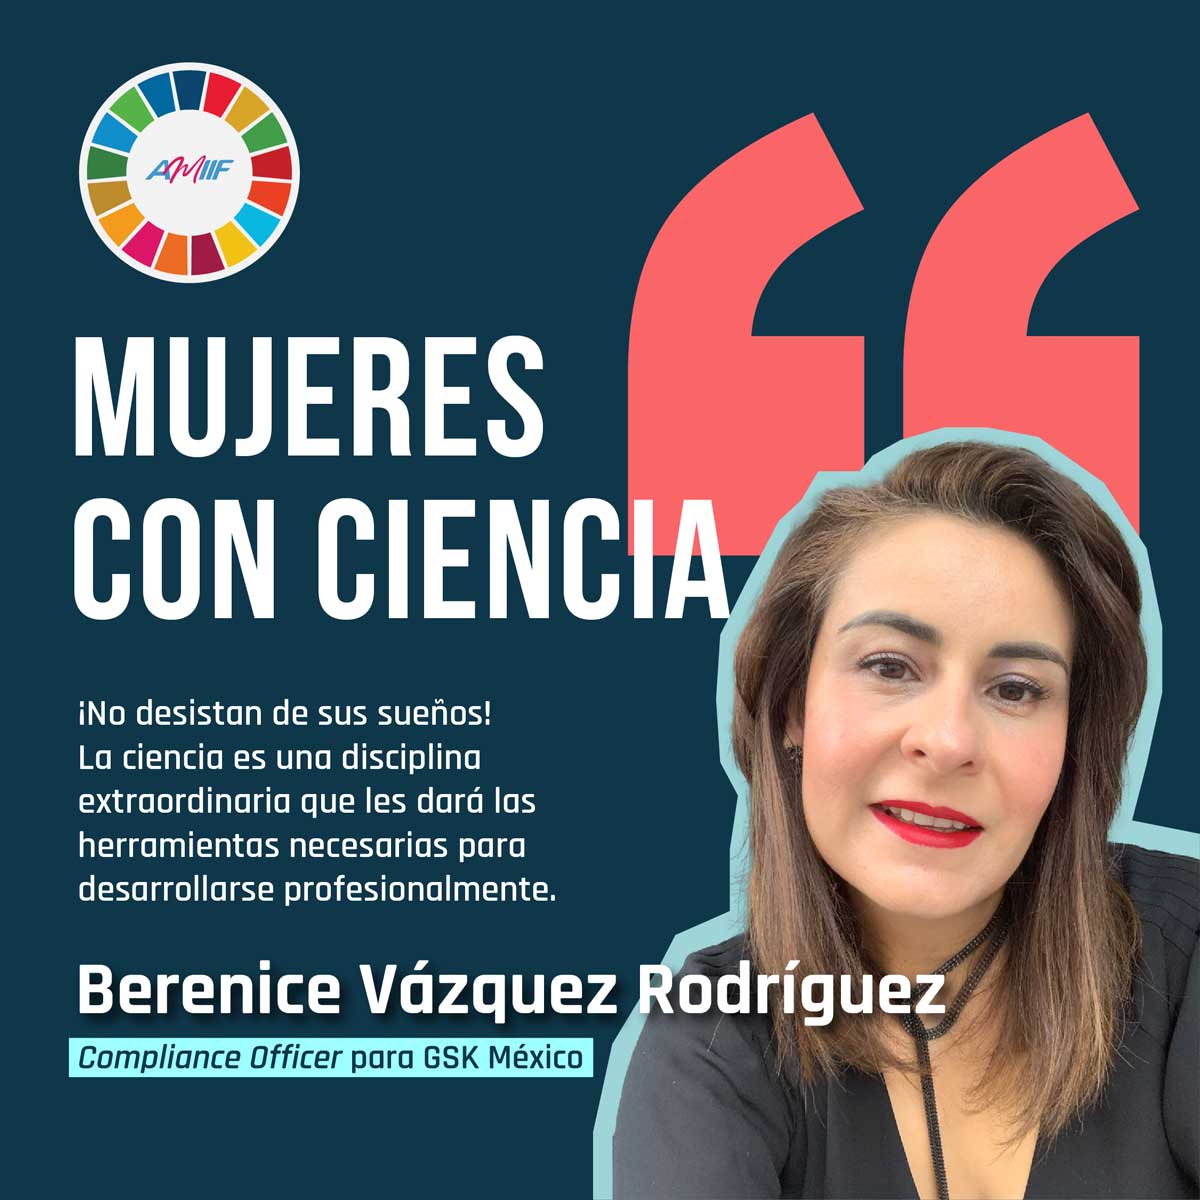 Berenice Vázquez Rodríguez